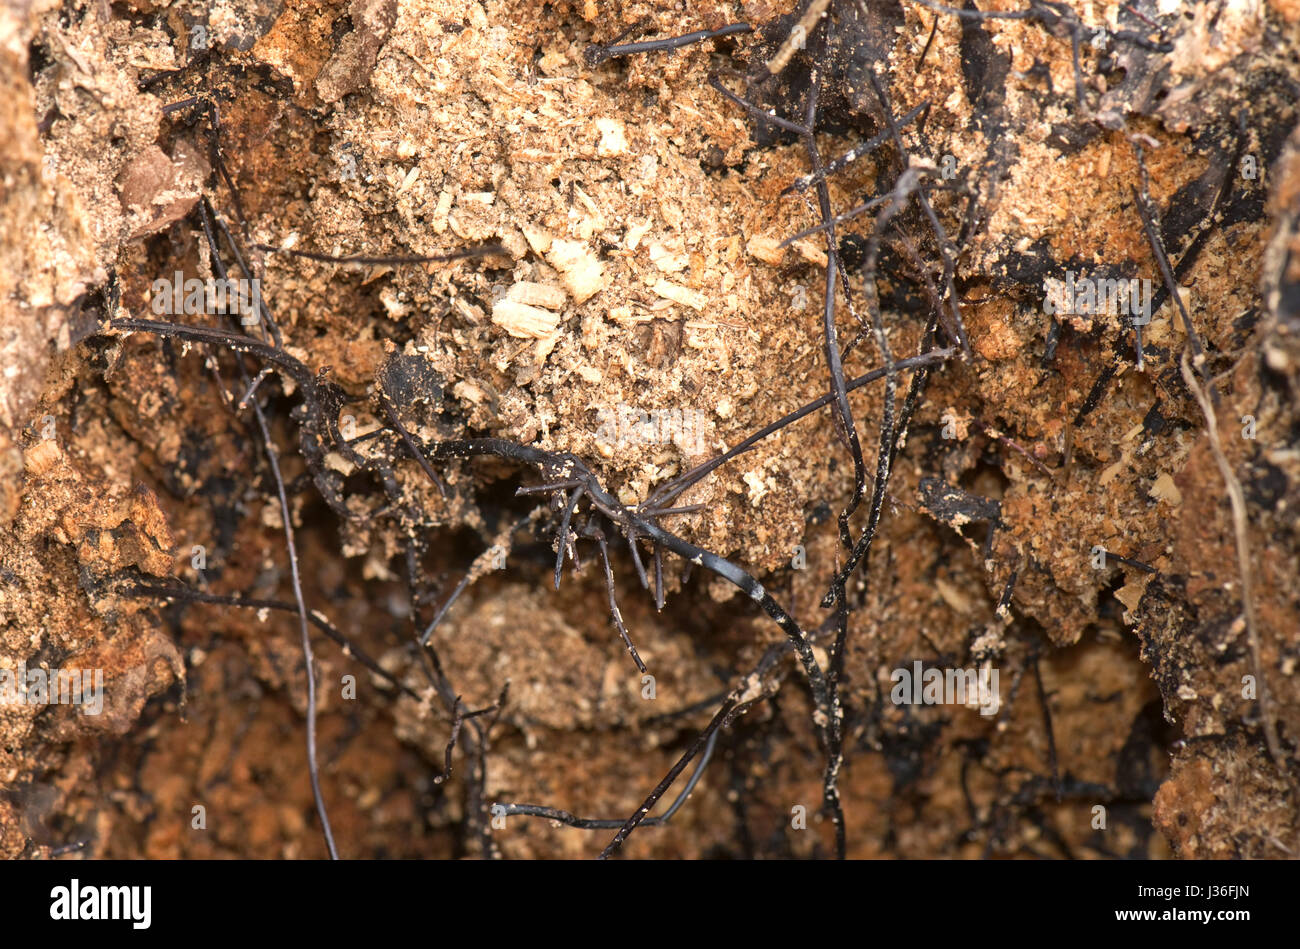 Negro o micótica rhizomorphs cordones de miel, hongo Armillaria mellea, formado sobre los enfermos y muertos, núcleo de un árbol podrido, Berkshire, Marzo Foto de stock